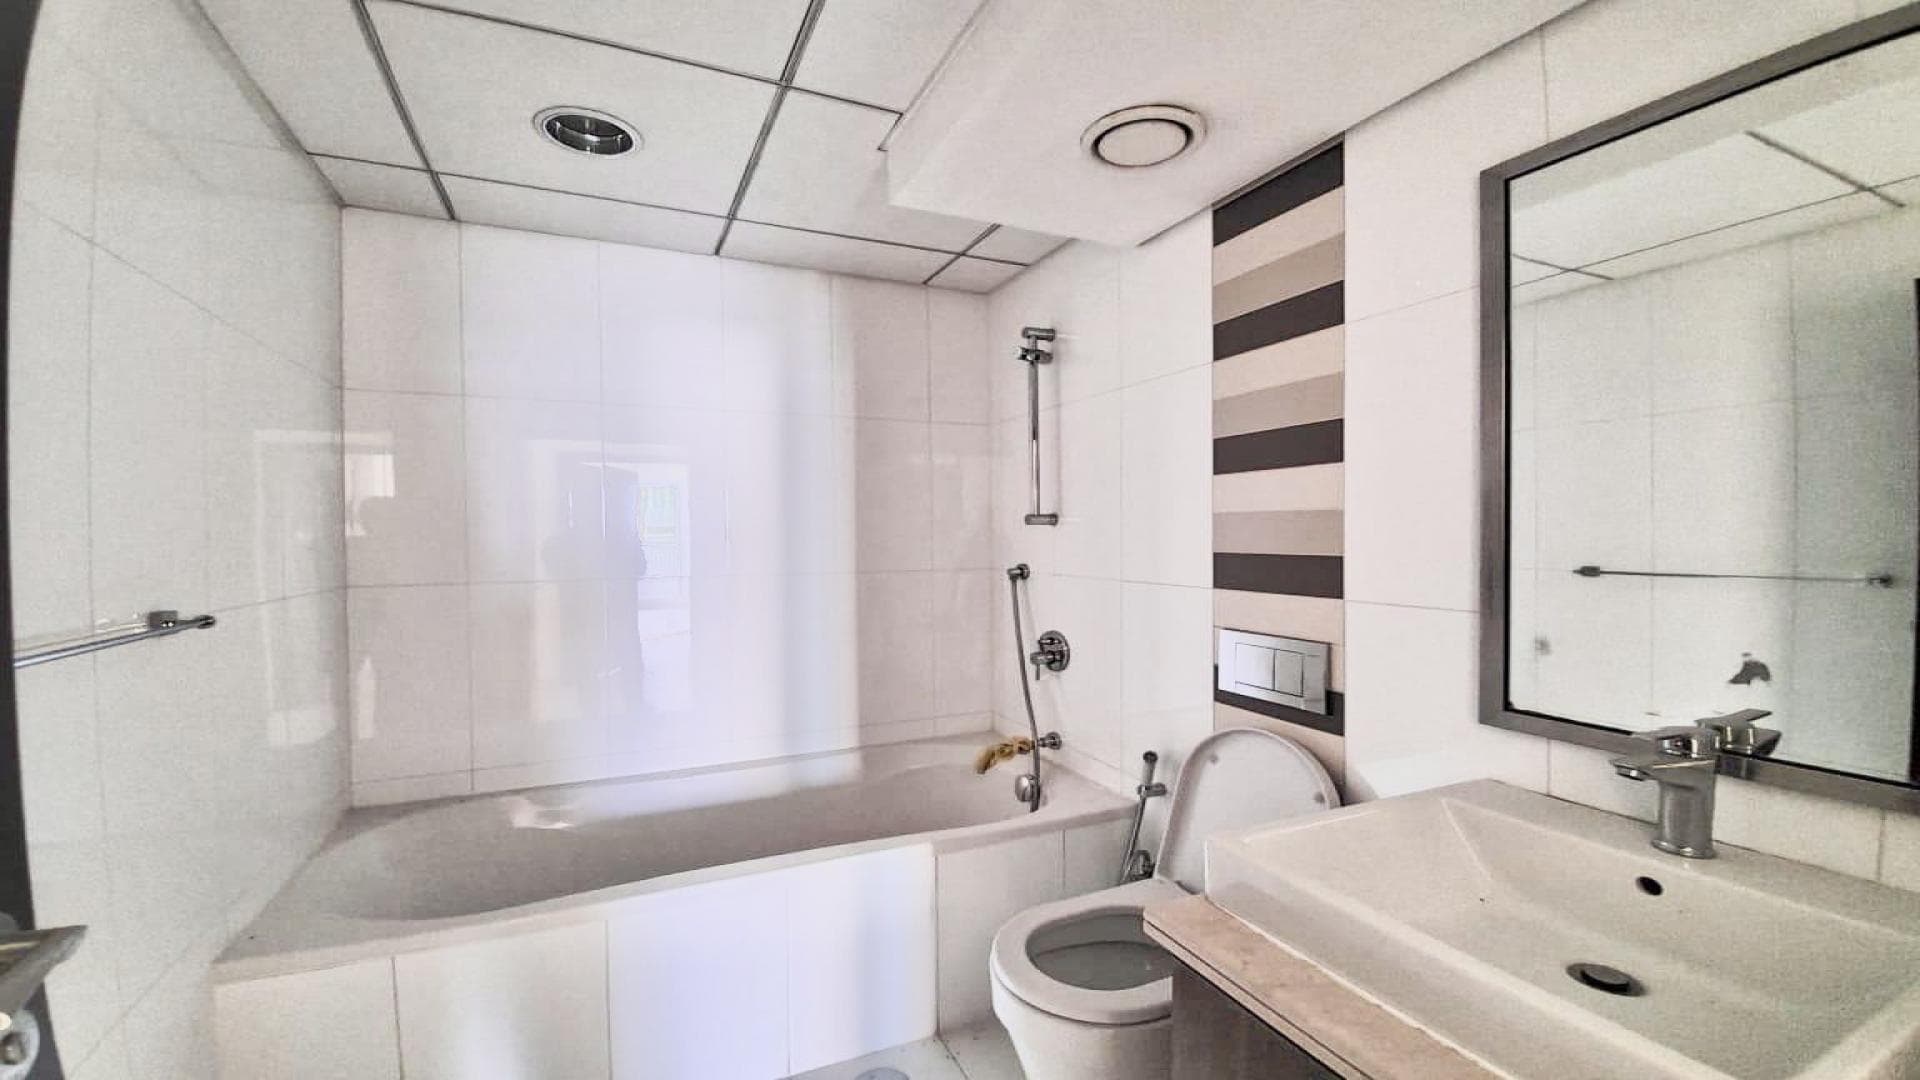 2 Bedroom Apartment For Rent Al Thamam 61 Lp35453 2f9a05b508a54e0.jpg